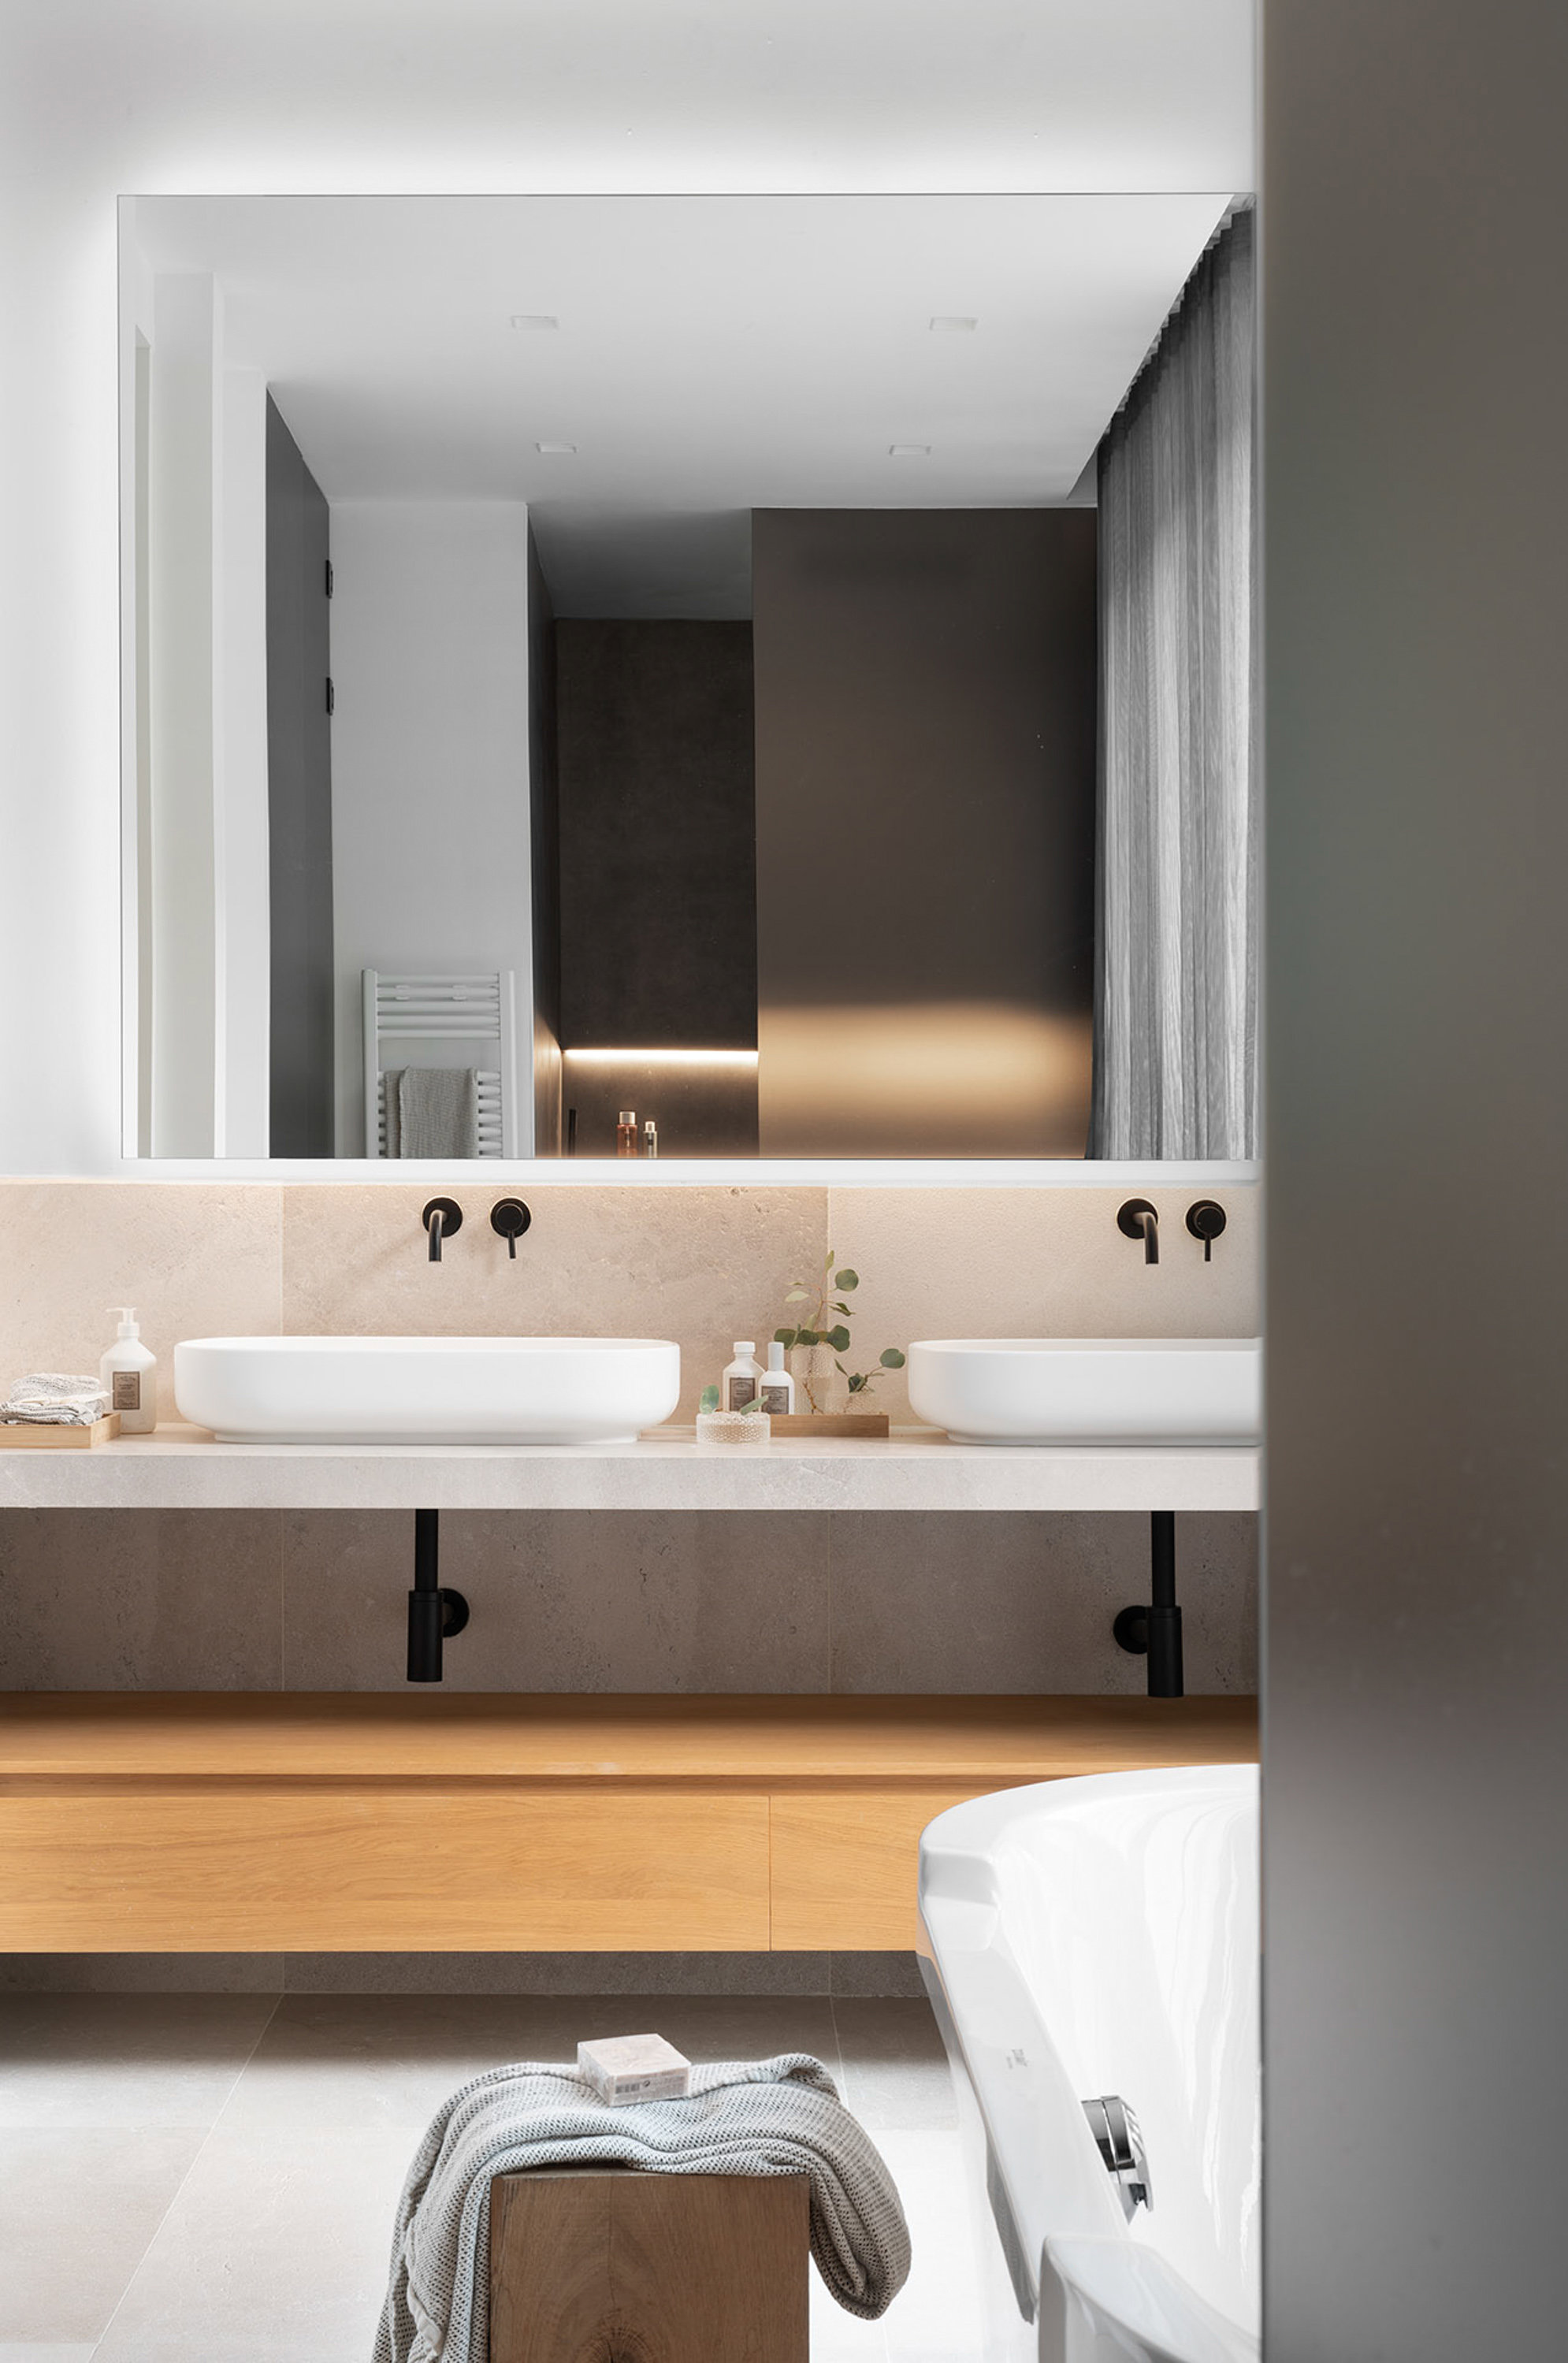 Las griferías de los baños son de la marca Icónico y el pavimento es de piedra caliza gris zarzi.